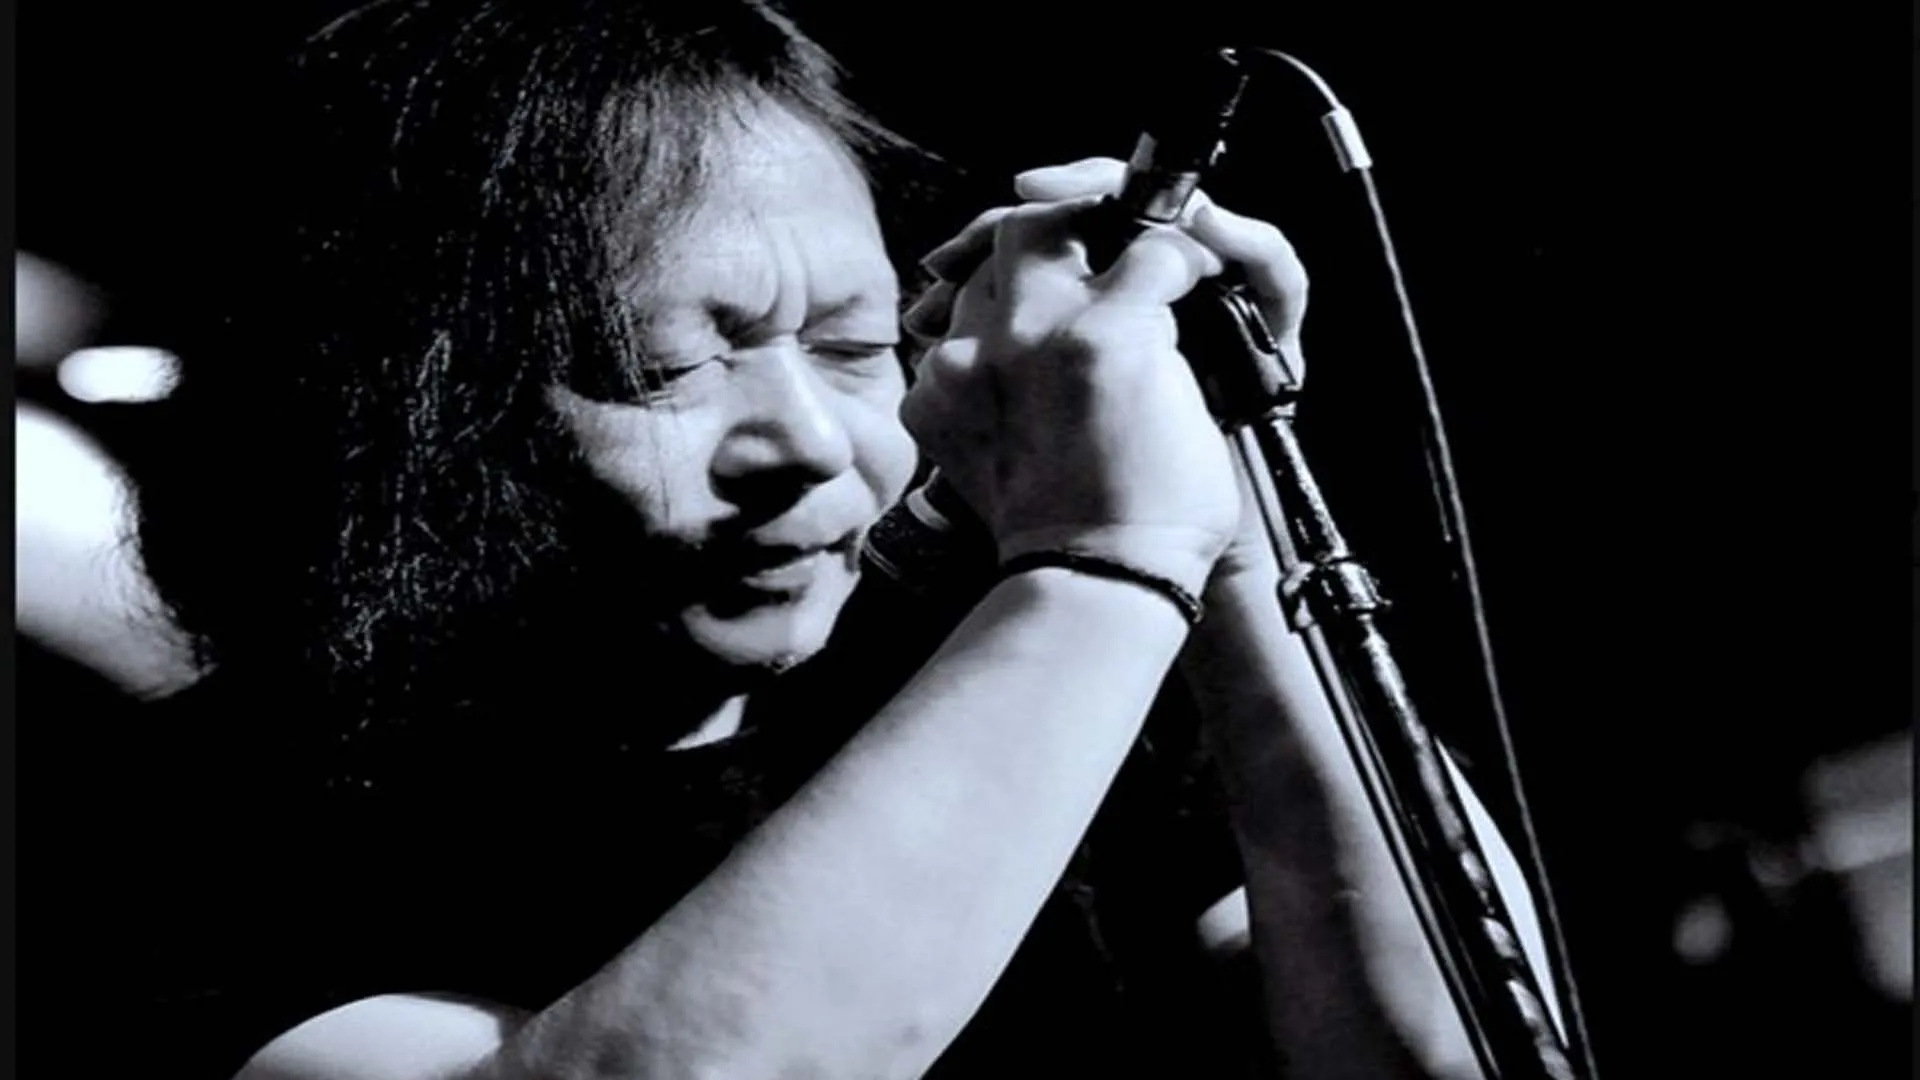 Damo Suzuki passes away: इंडस्ट्री में फैली शोक की लहर, फेमस सिंगर का हुआ निधन